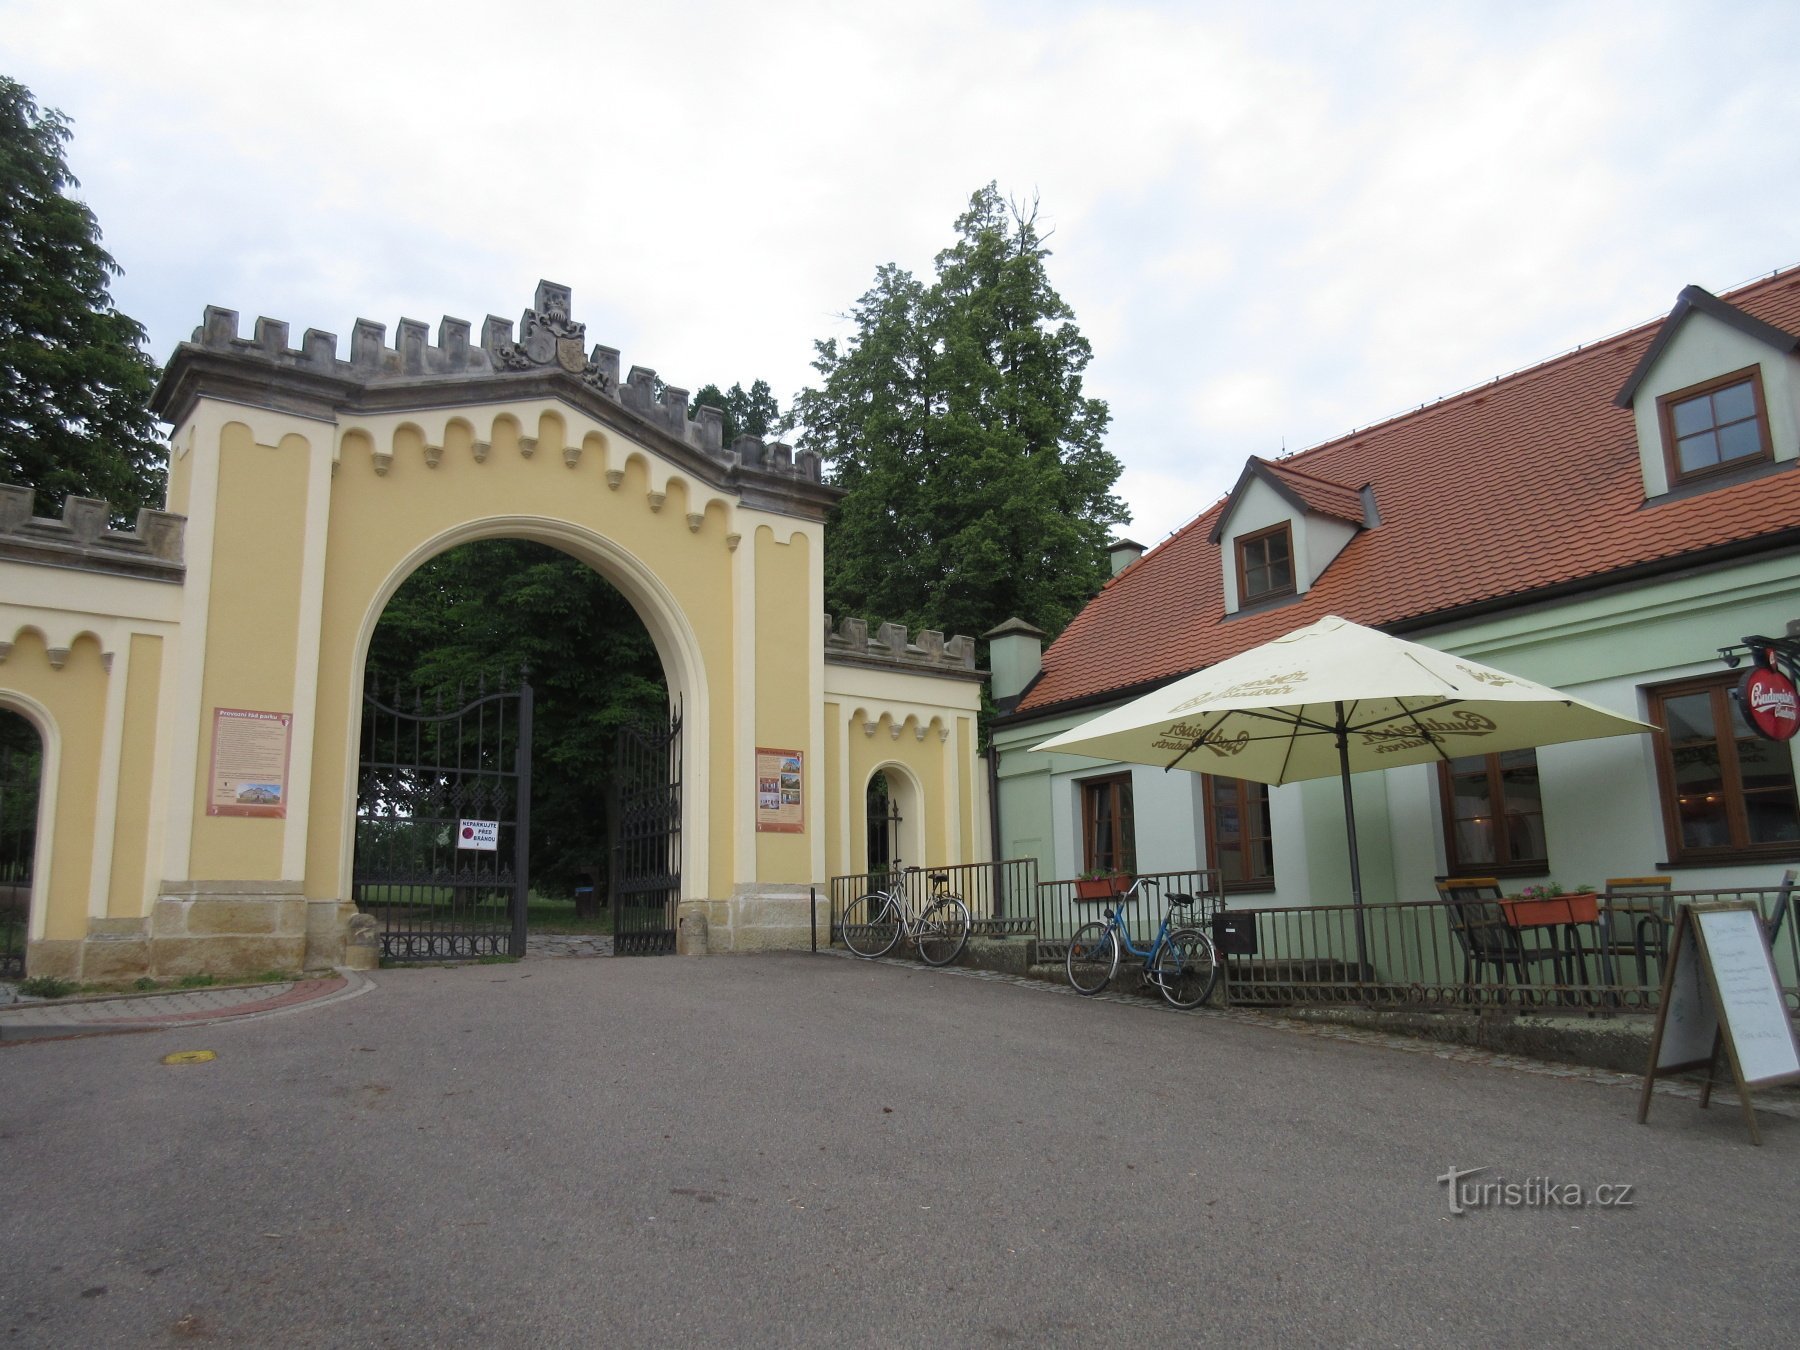 Eingang zum Schlossgarten